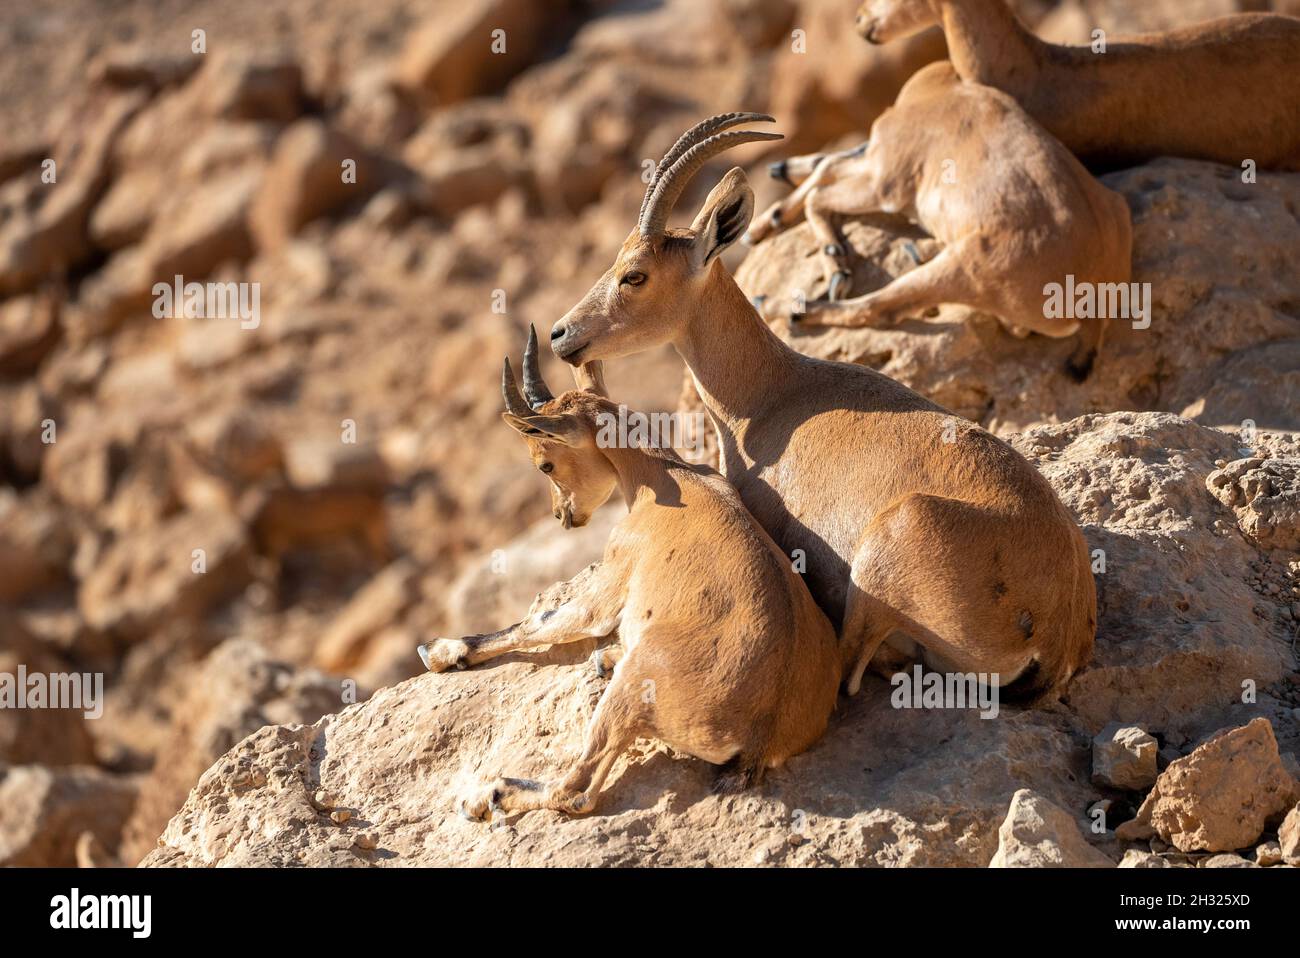 Femmina Nubian Ibex (Capra ibex nubiana AKA Capra nubiana) che si prende cura della sua giovane fotografata in Israele, nel deserto di Negev nel mese di ottobre Foto Stock